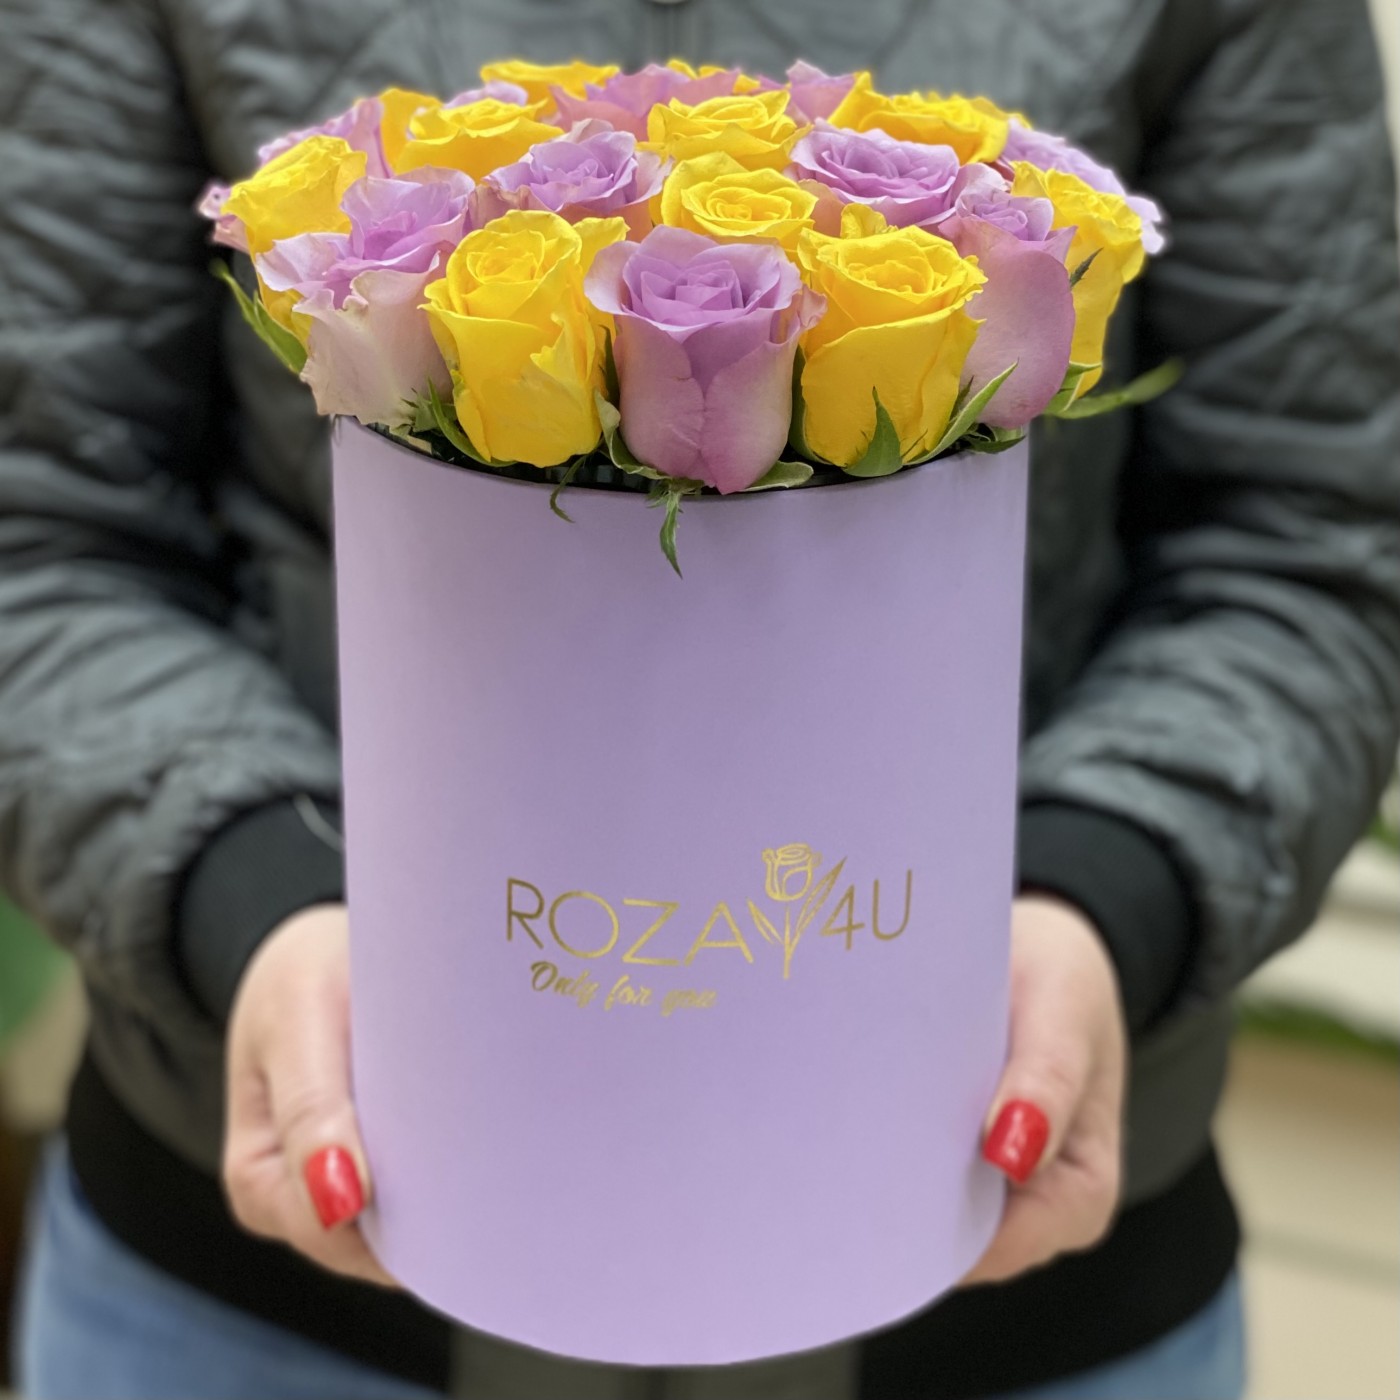 25 желтых и фиолетовых роз в коробке